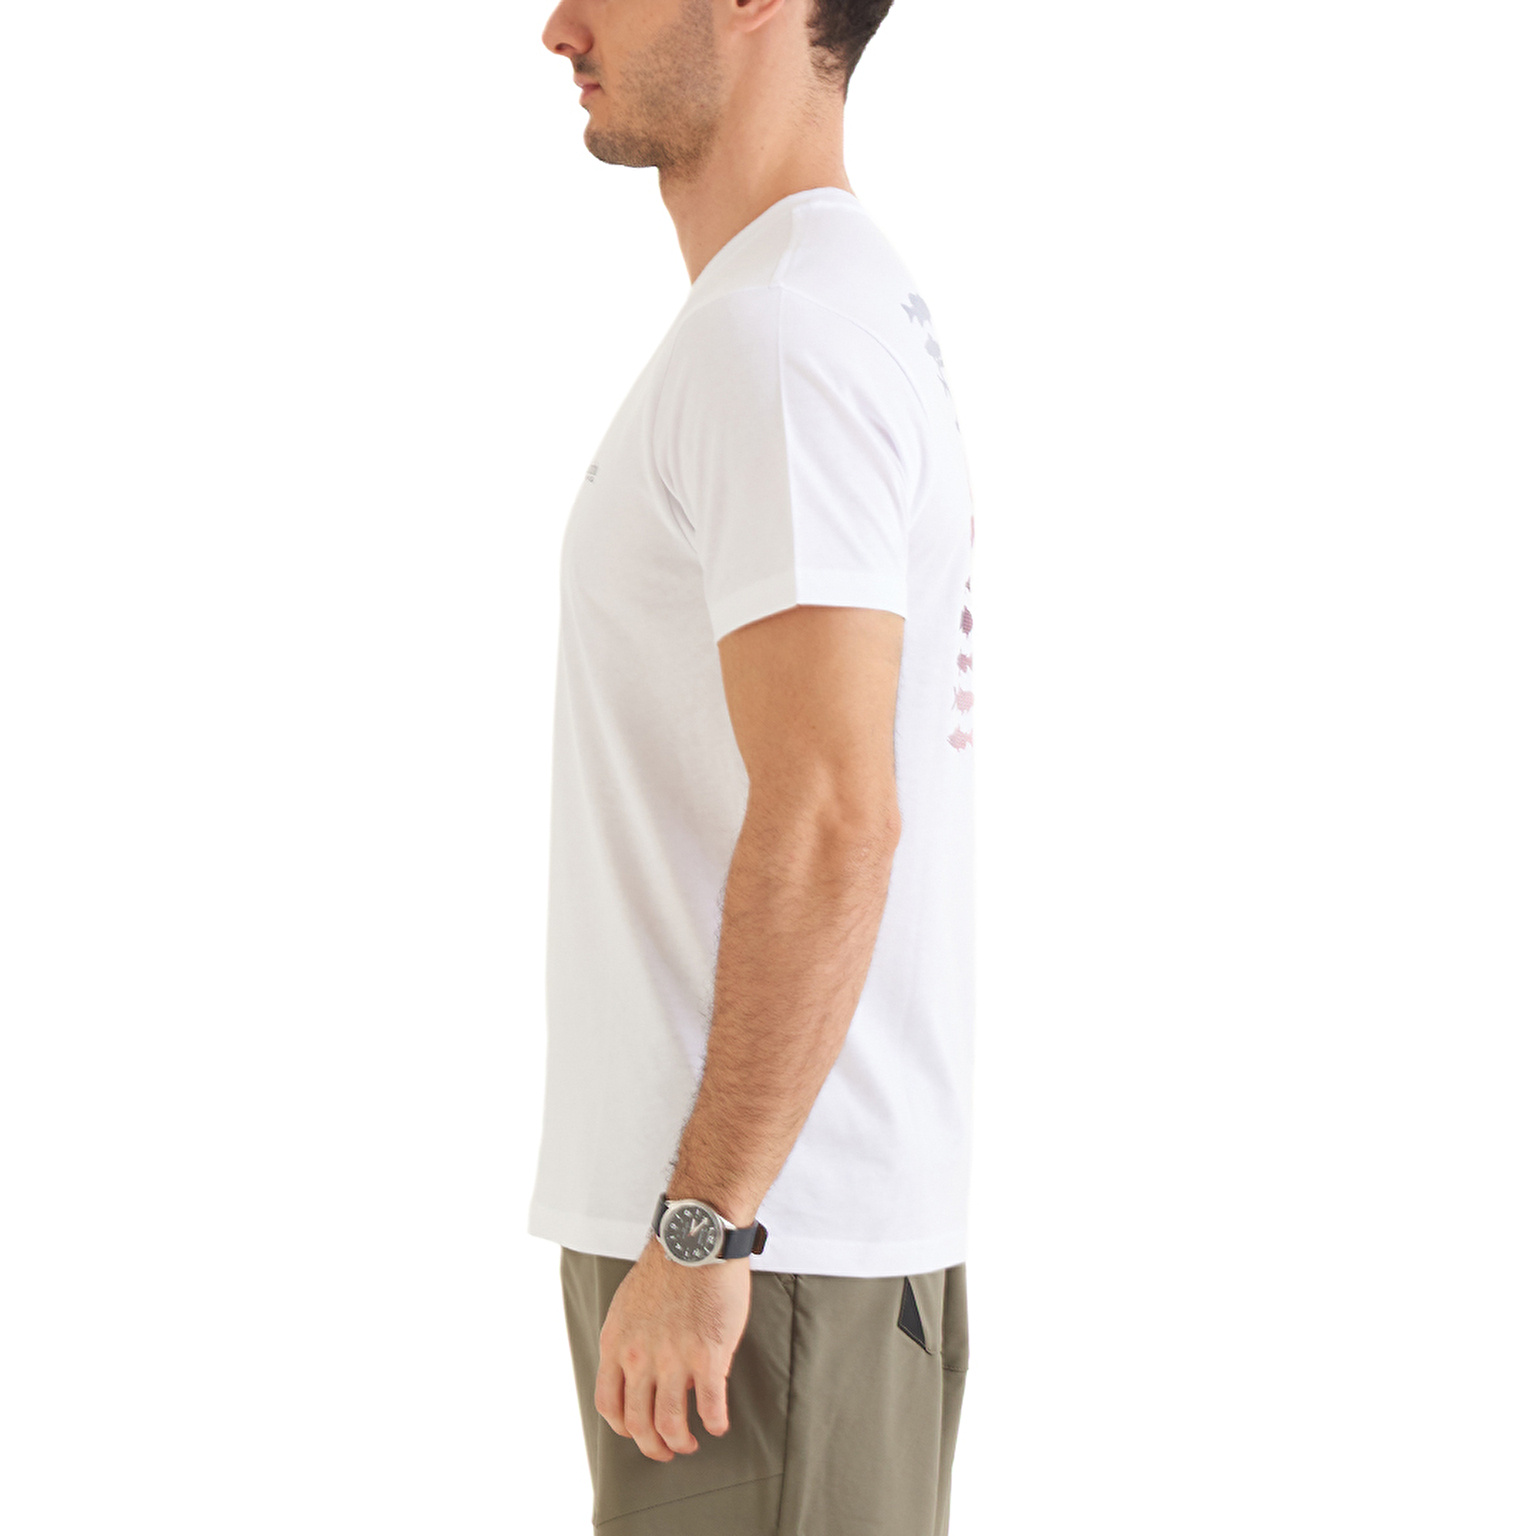 CSC PFG Elements Erkek Kısa Kollu T-shirt